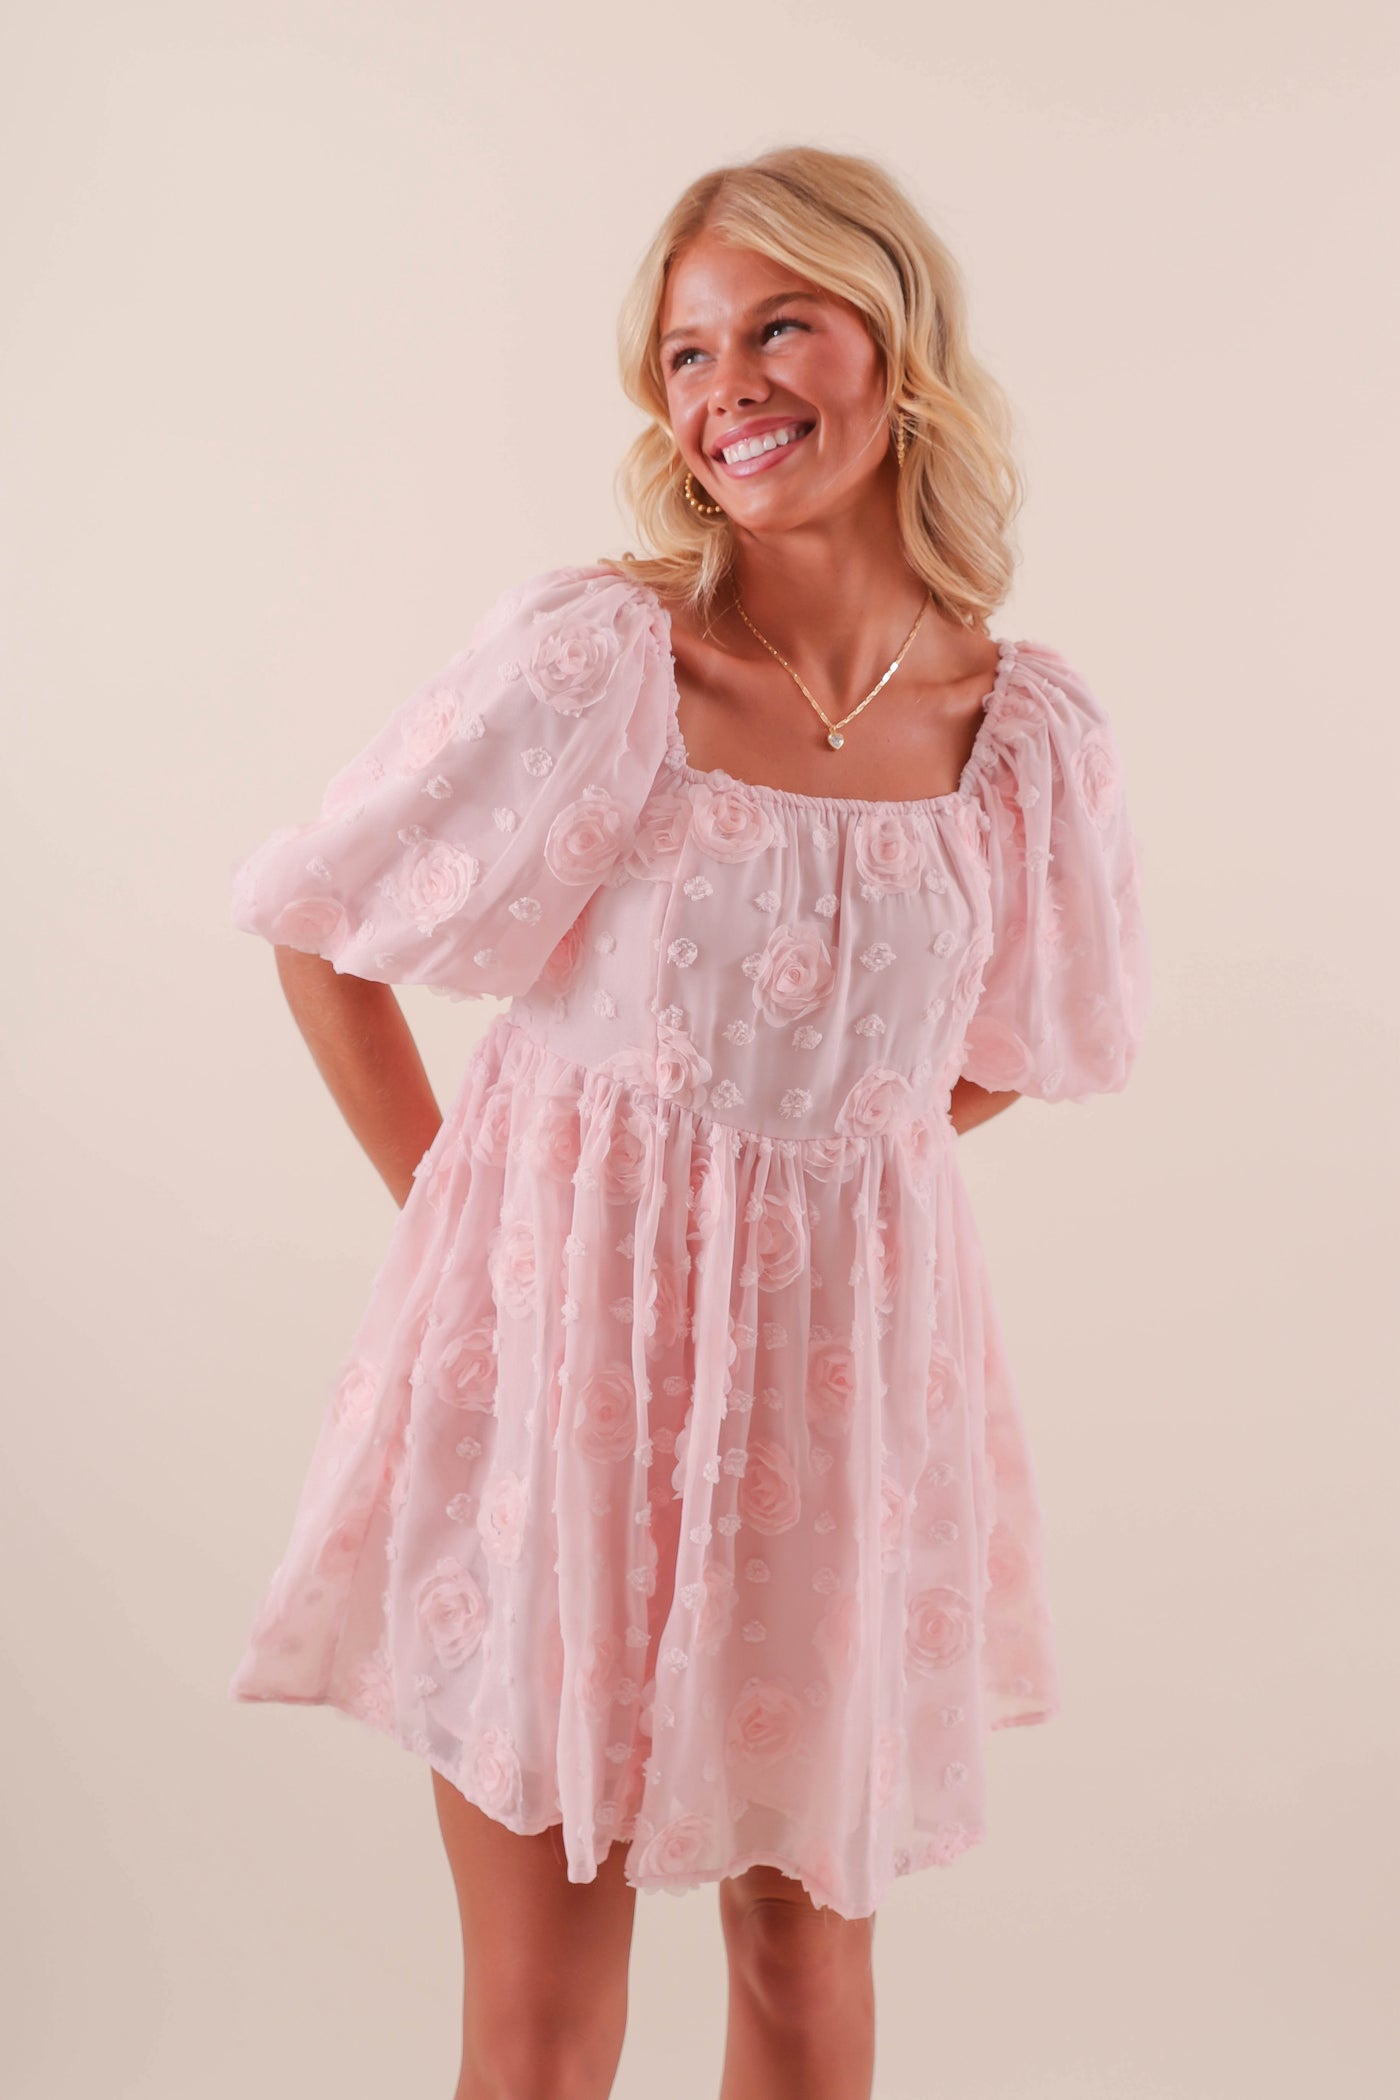 Women's 3D Rose Dress- Blush Pink Babydoll Dress- Women's Pink Flower Dress